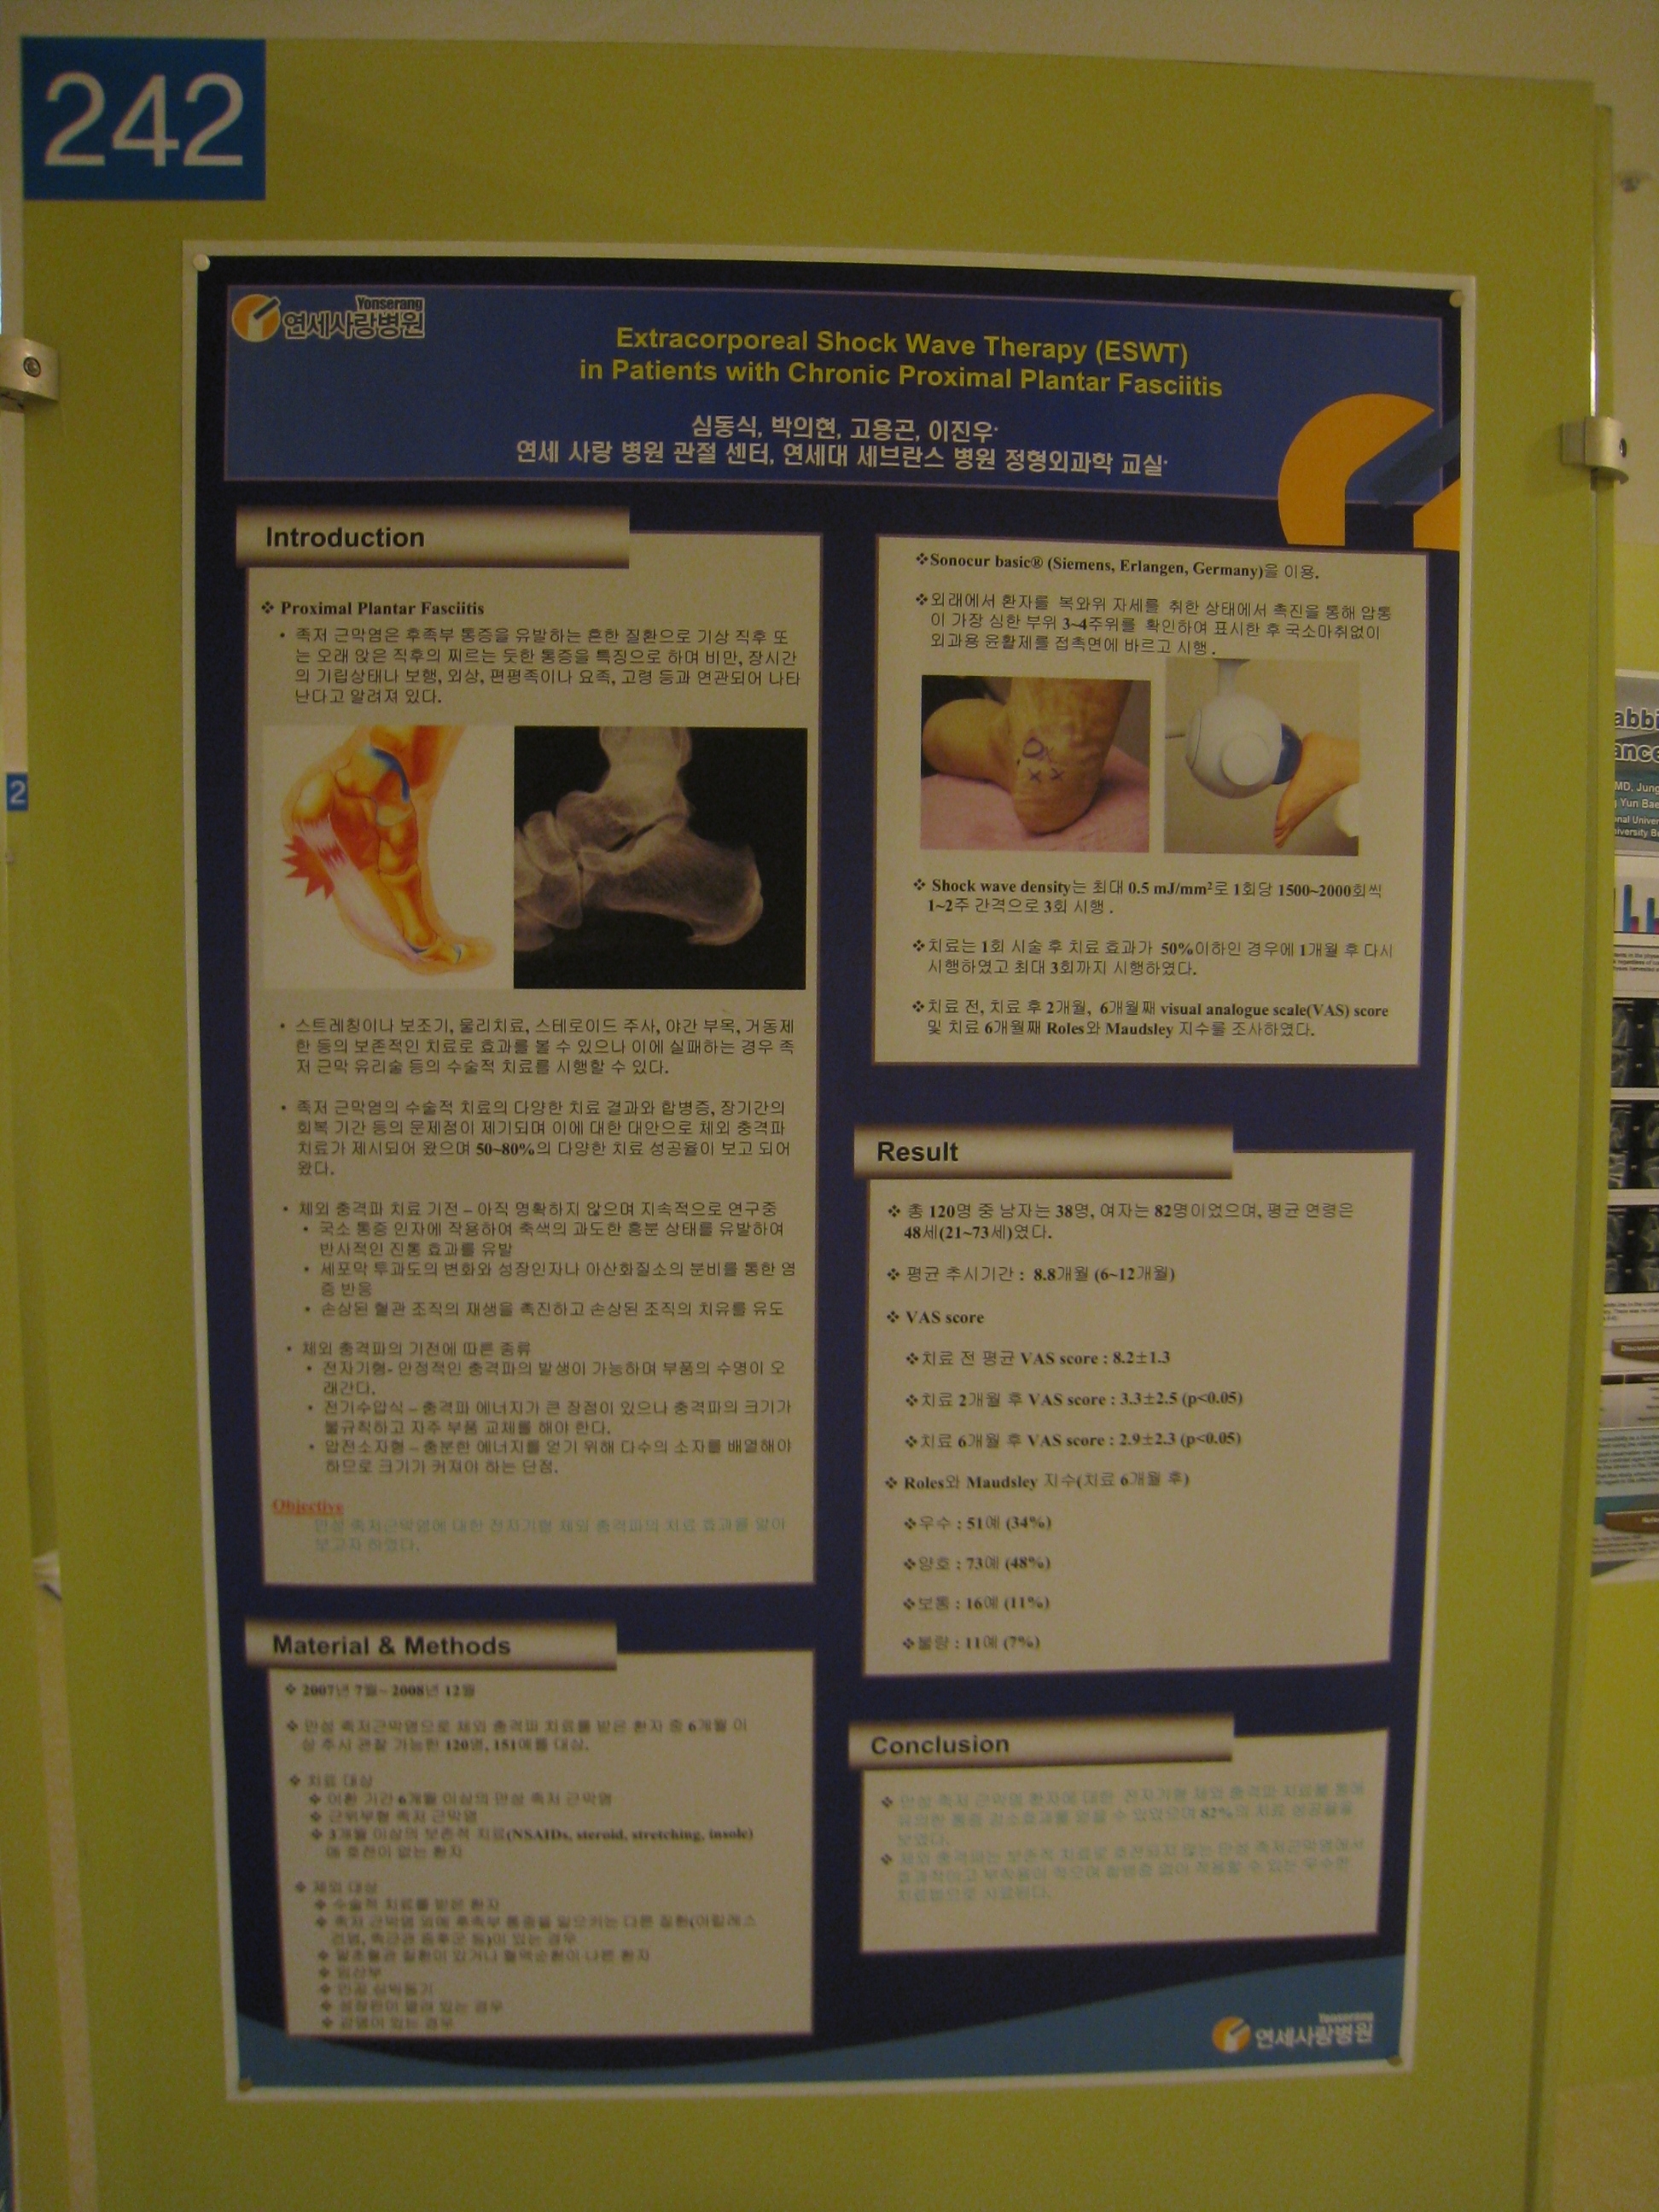 [2009 대한정형외과 학회 포스터] 체외충격파를 이용한 만성 족저 근막염의 치료 게시글의 1번째 첨부파일입니다.